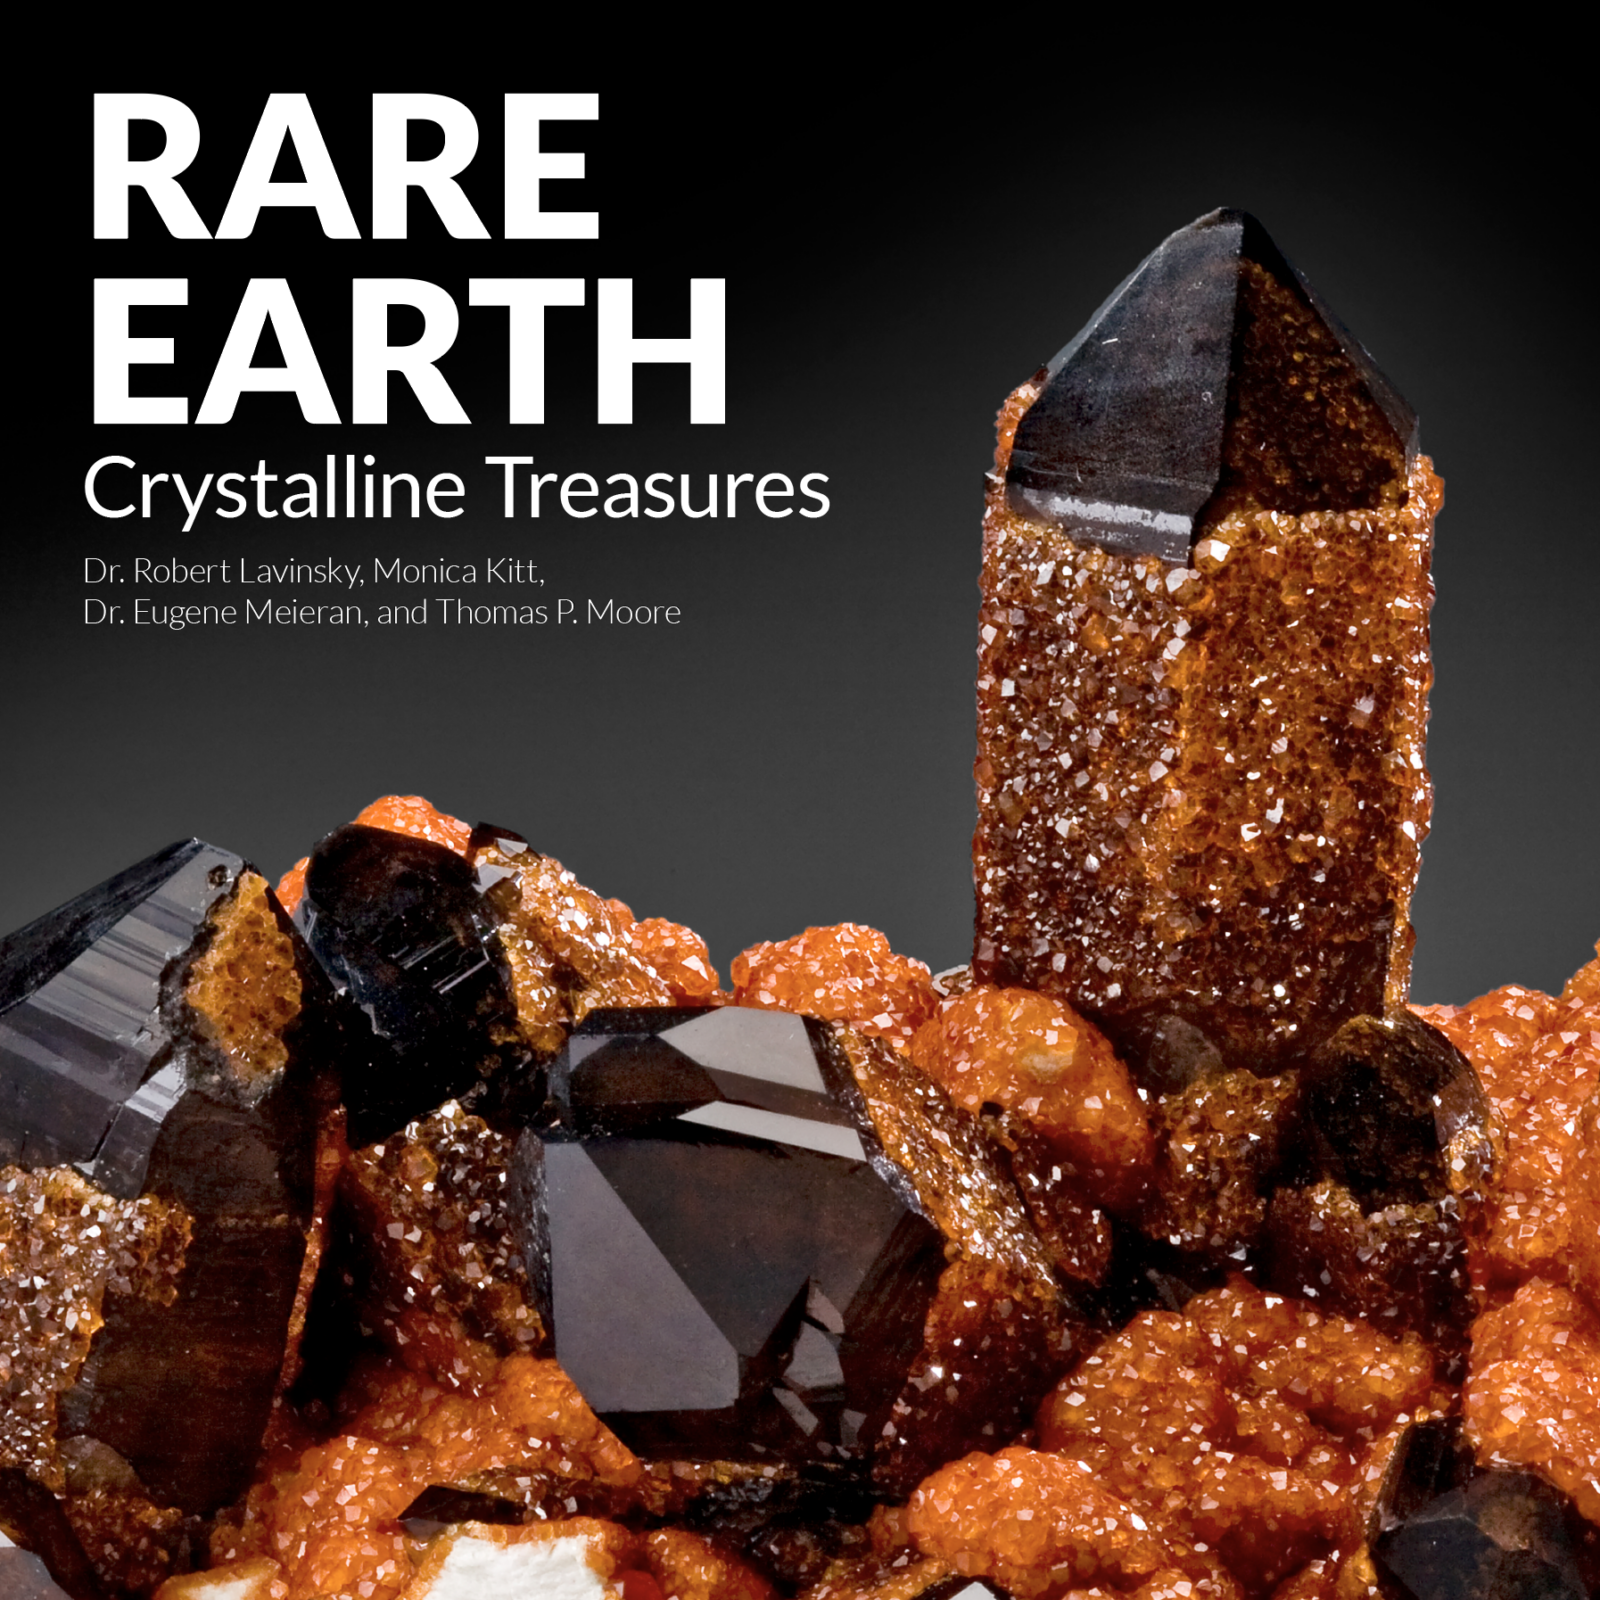 Cover art of Rare Earth Crystalline Treasures by Dr. Robert Lavinsky, Monica Kitt, Dr. Eugene Meieran, and Thomas P. Moore